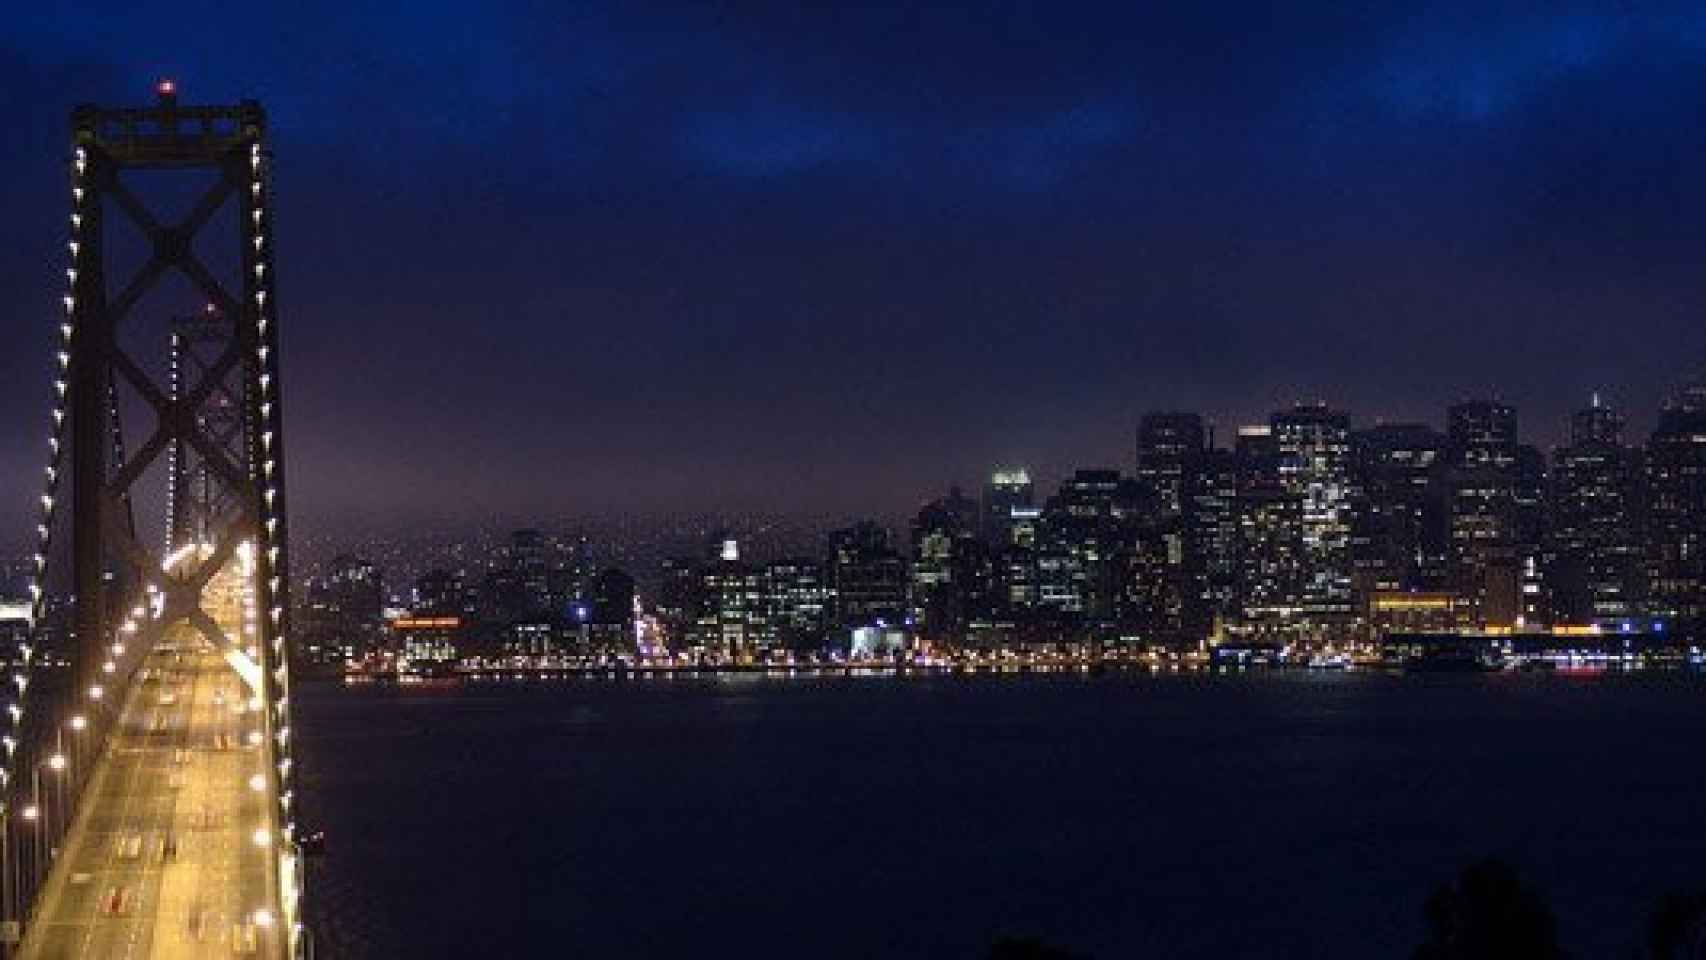 Vista de San Francisco (EEUU) desde su puente más famoso, el Golden Gate